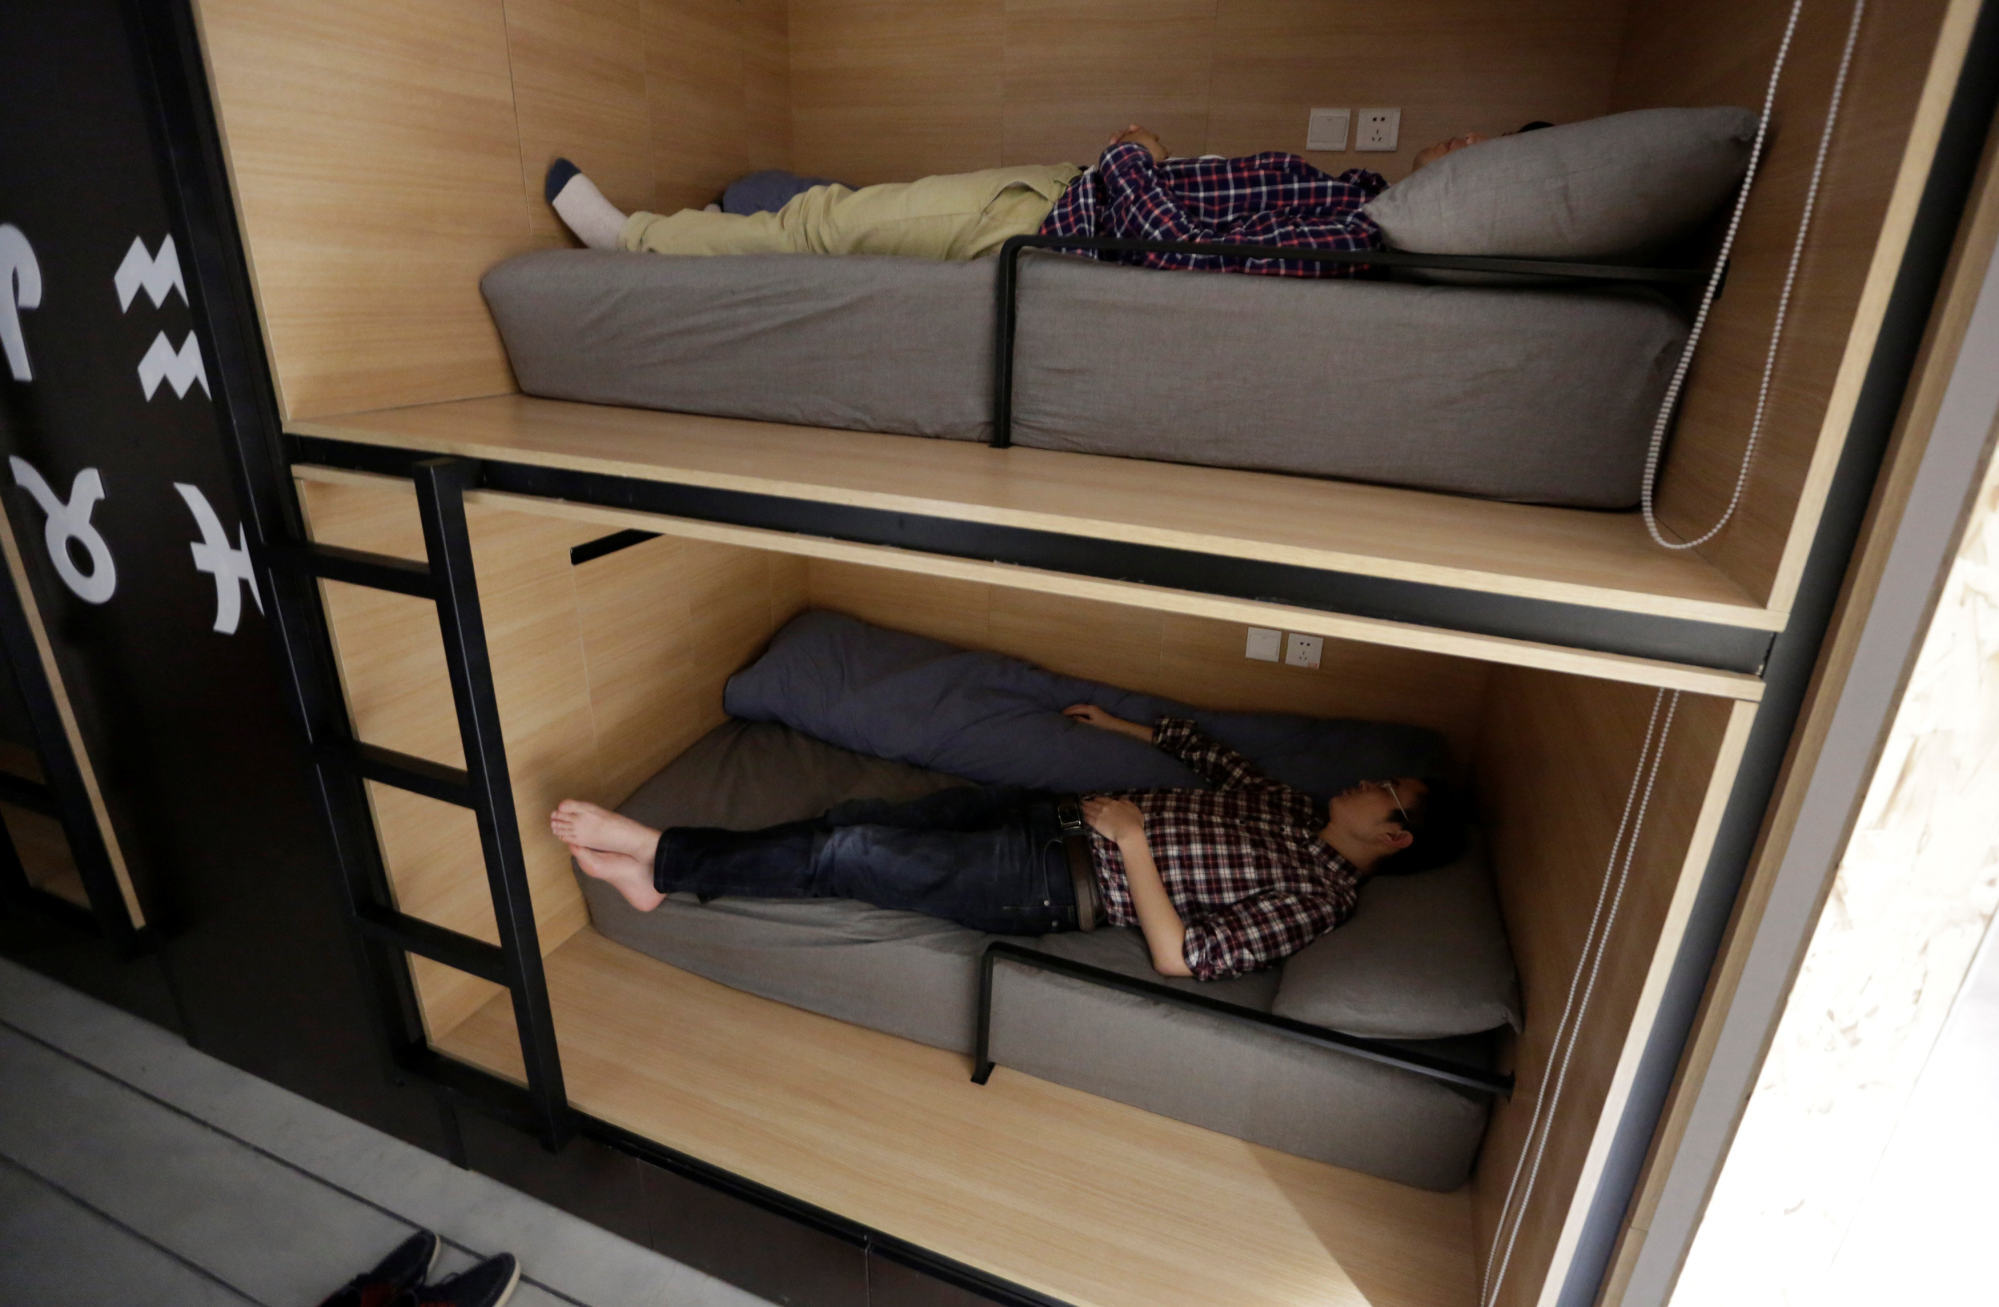 Спать место. Место снов. Место для сна в офисе. Кровать для сна на улице. Японцы спят в офисе.